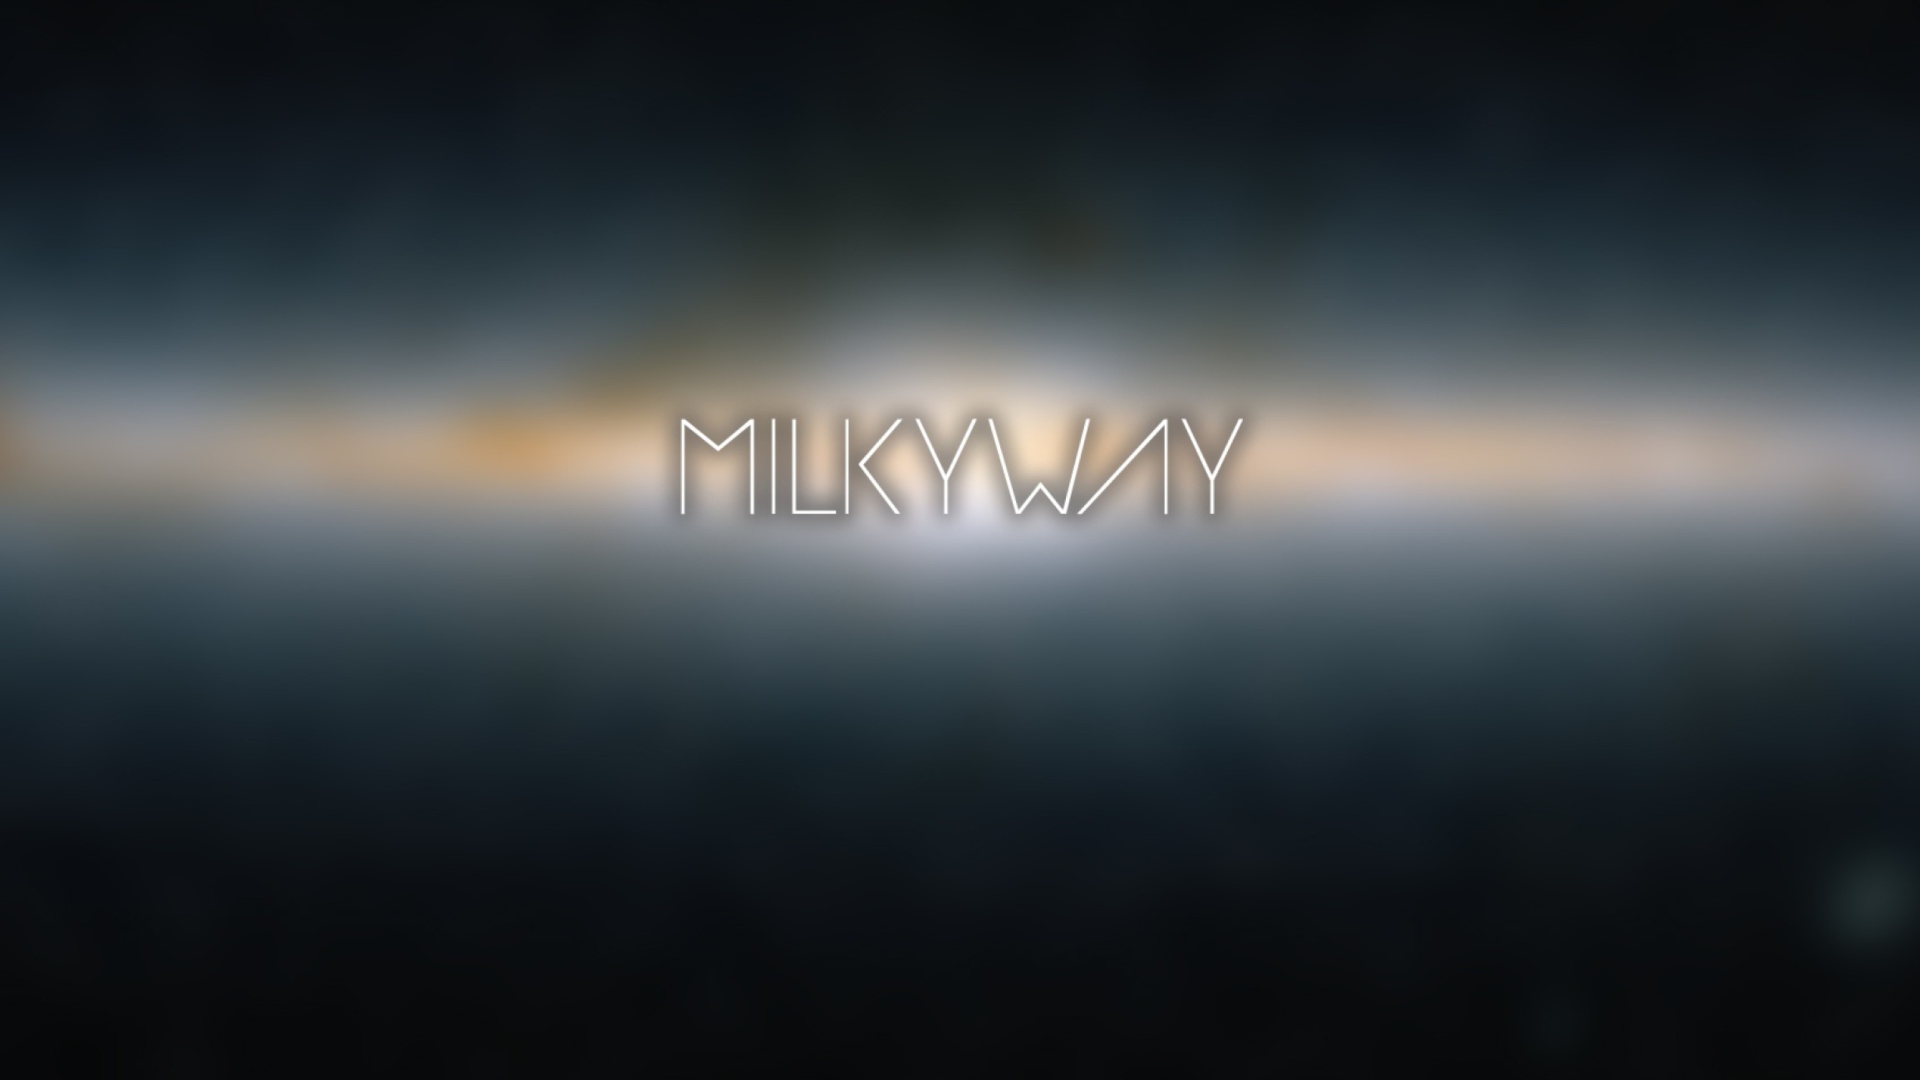 Milky Way wallpaper 1920x1080